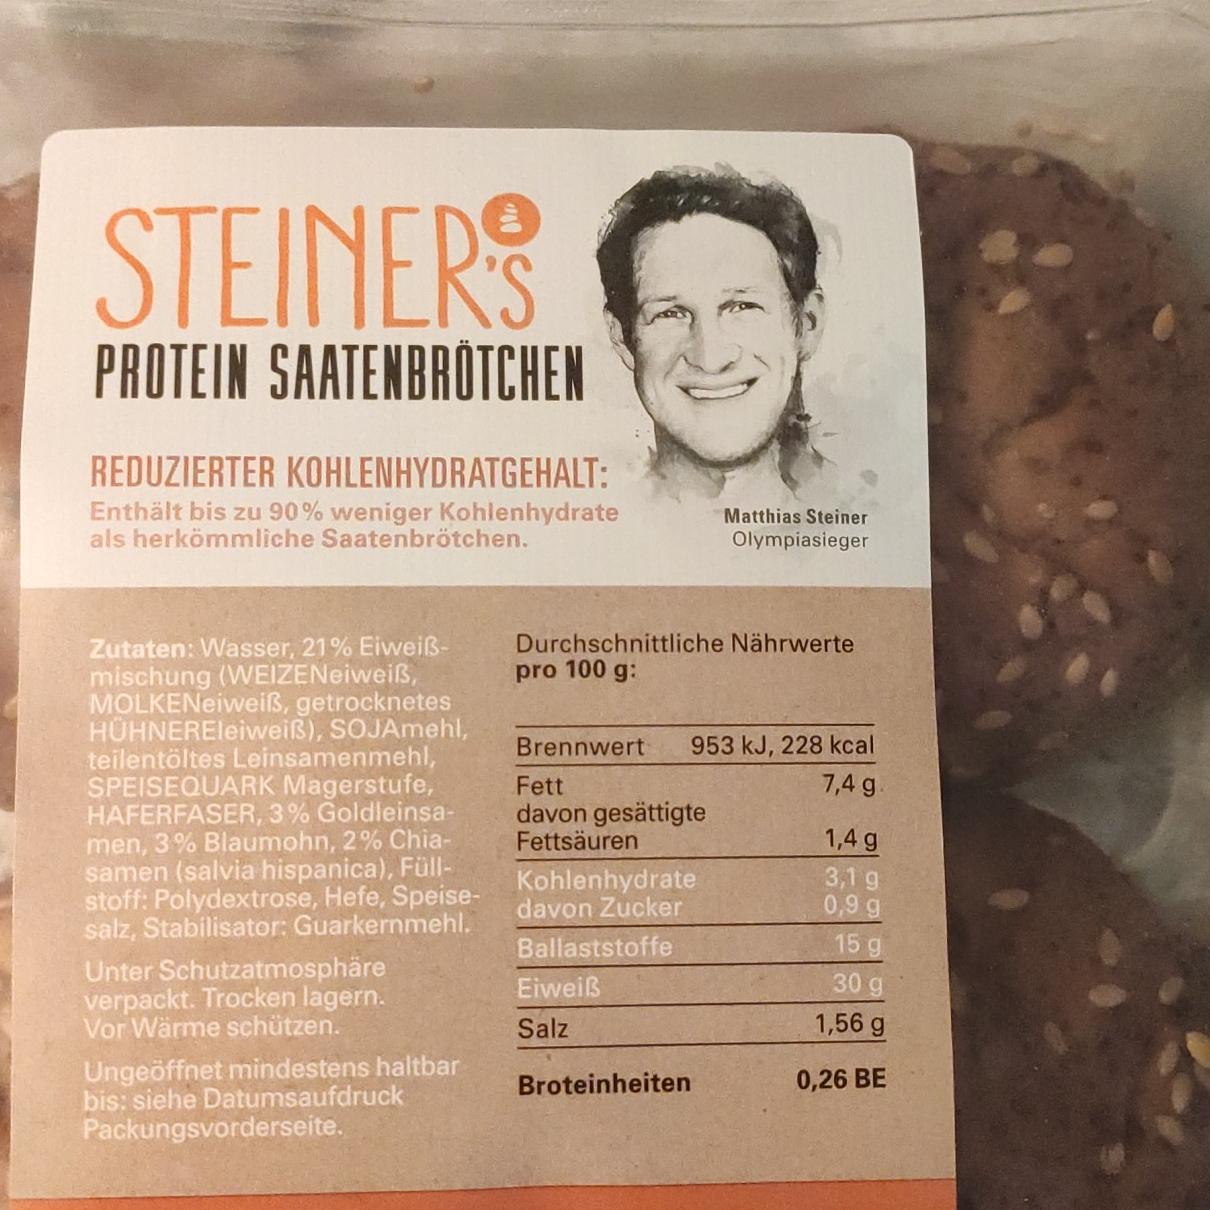 Fotografie - Protein Saatenbrötchen Steiner's